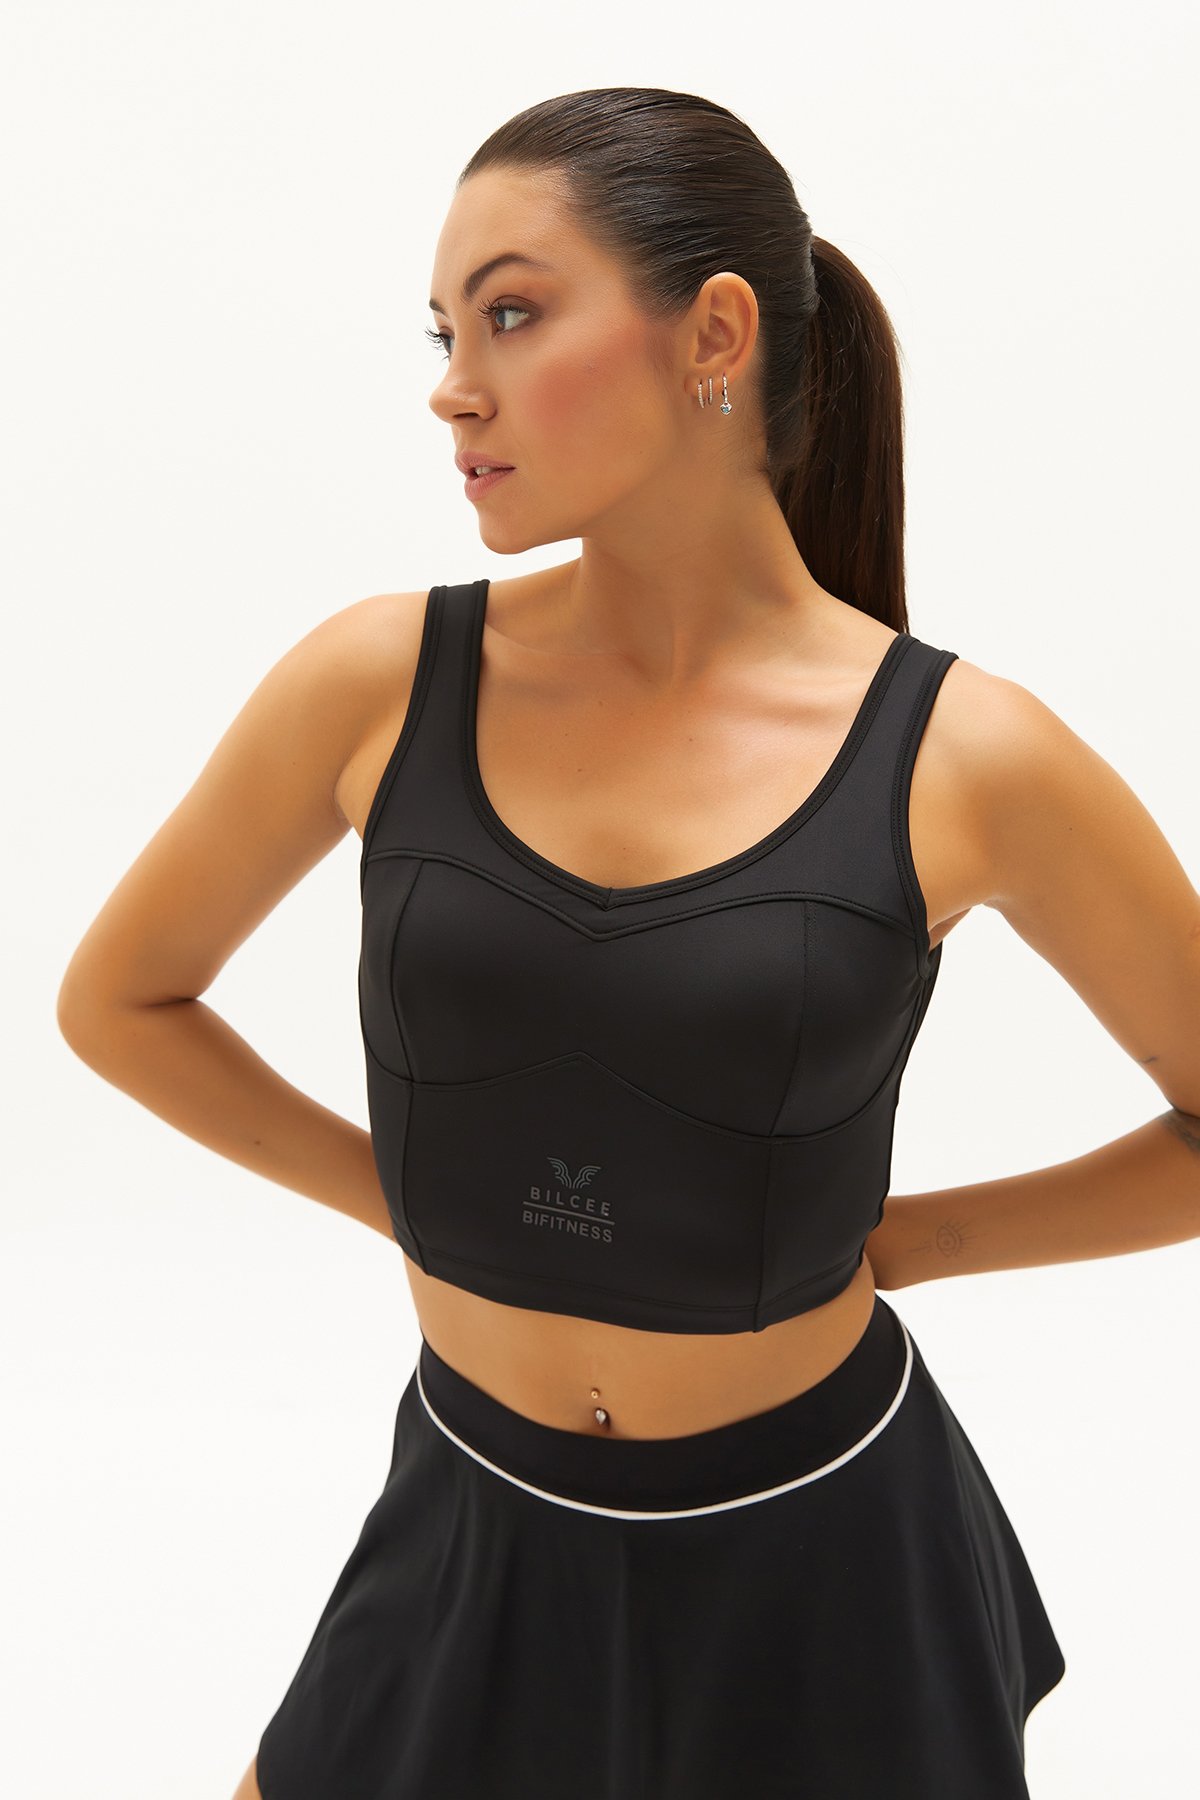 Kadın Siyah Fitness-Antrenman Spor Fashion Crop Top Toparlayıcı Bra Sporcu Sütyeni Büstiyer 0604 - 5